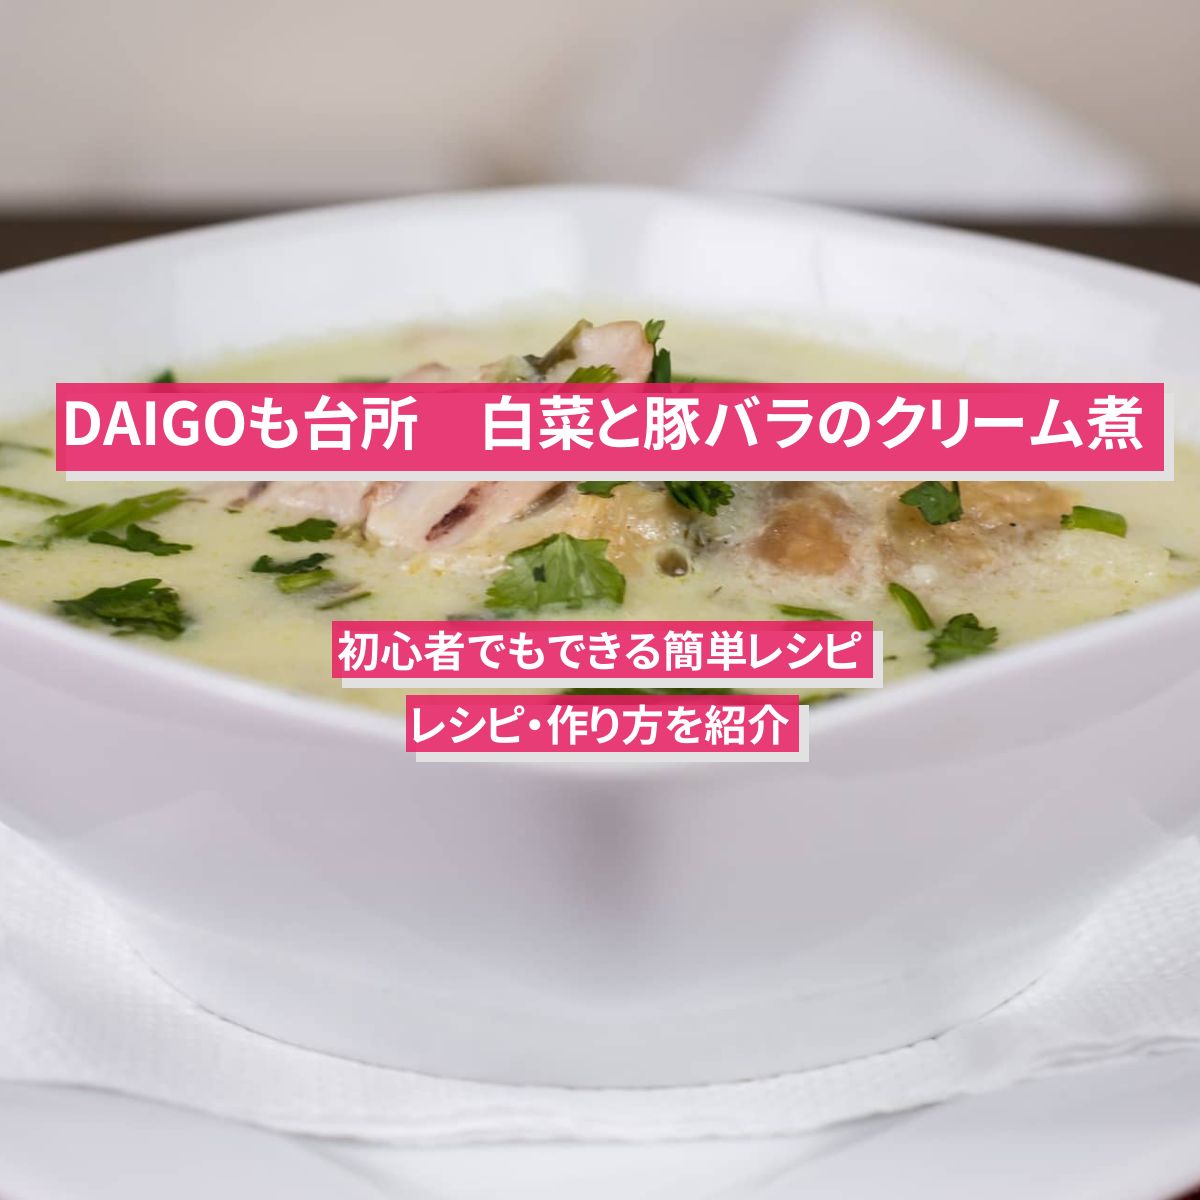 【DAIGOも台所】『白菜と豚バラのクリーム煮』のレシピ・作り方を紹介